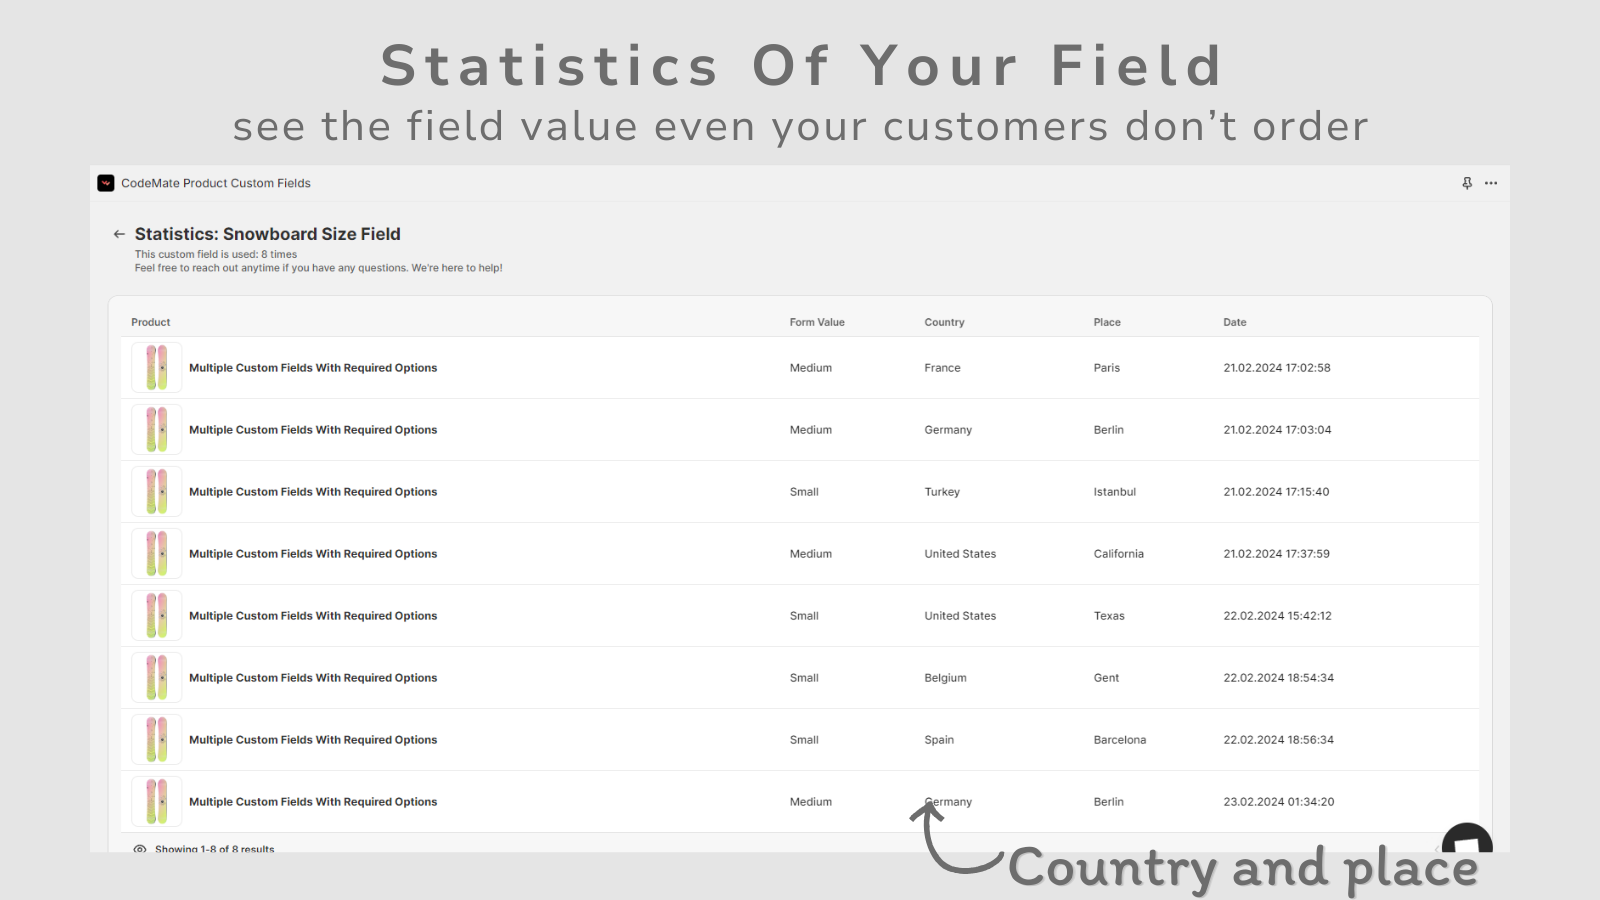 Sehen Sie Statistiken für Produktoptionen, personalisierte, benutzerdefinierte Felder